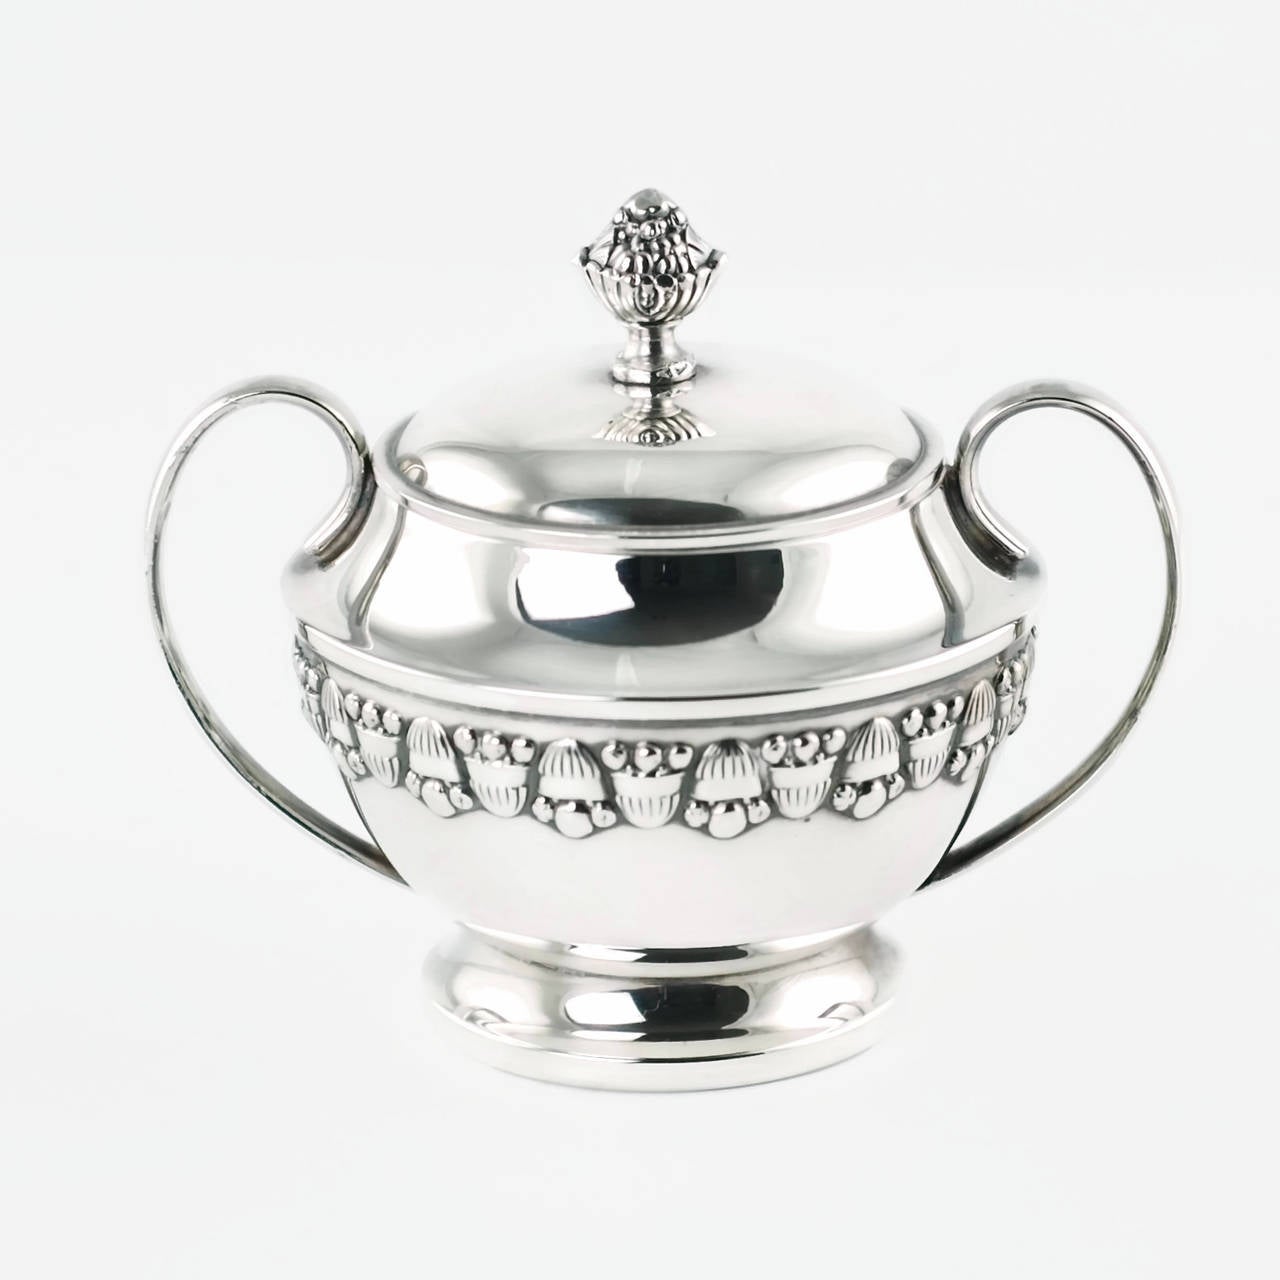 emanuel the teapot